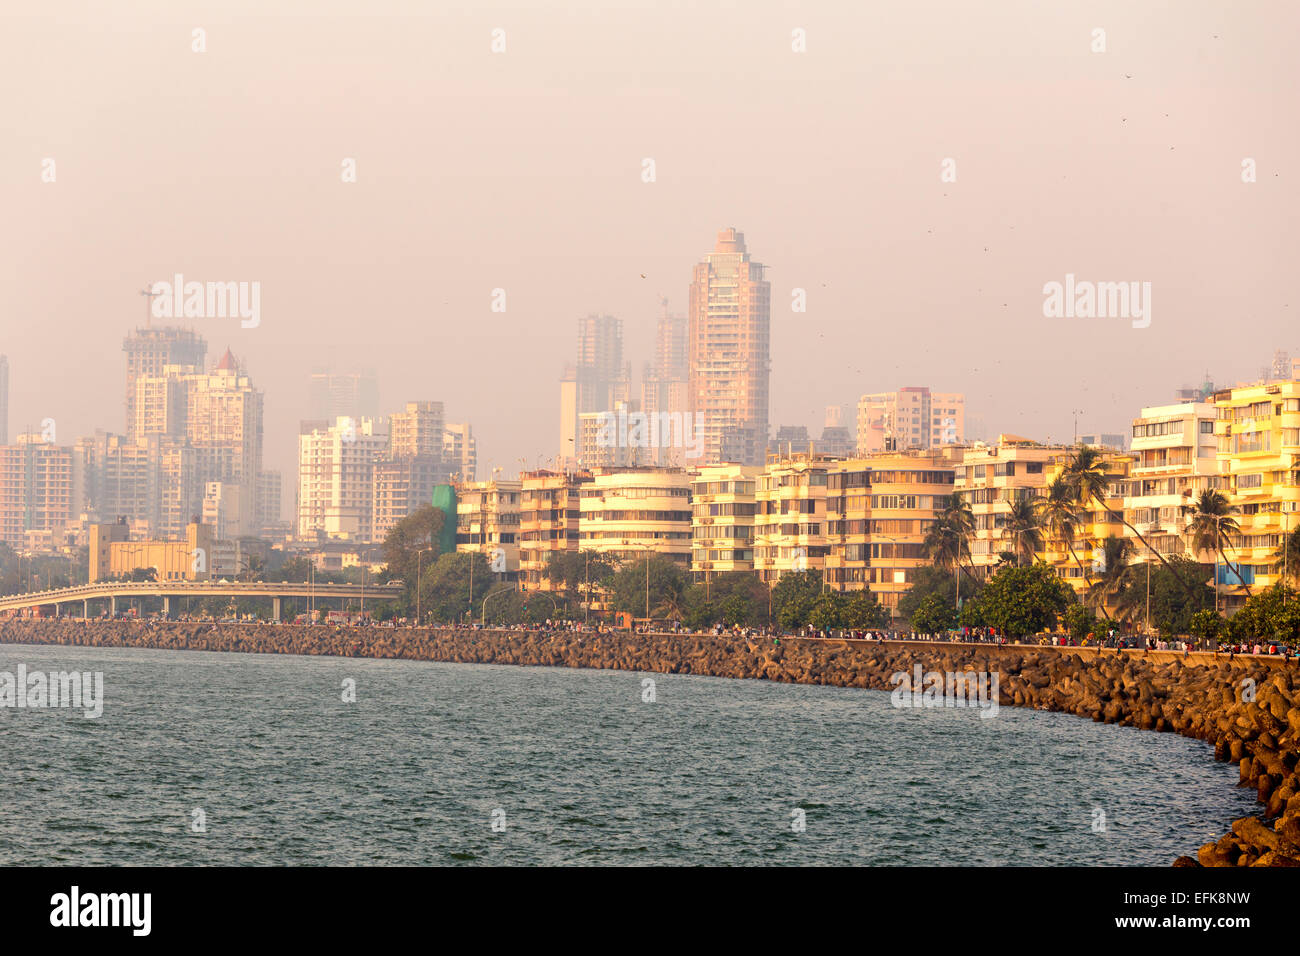 India,Maharashtra, Mumbai, Marine drive and skyscrapers Stock Photo